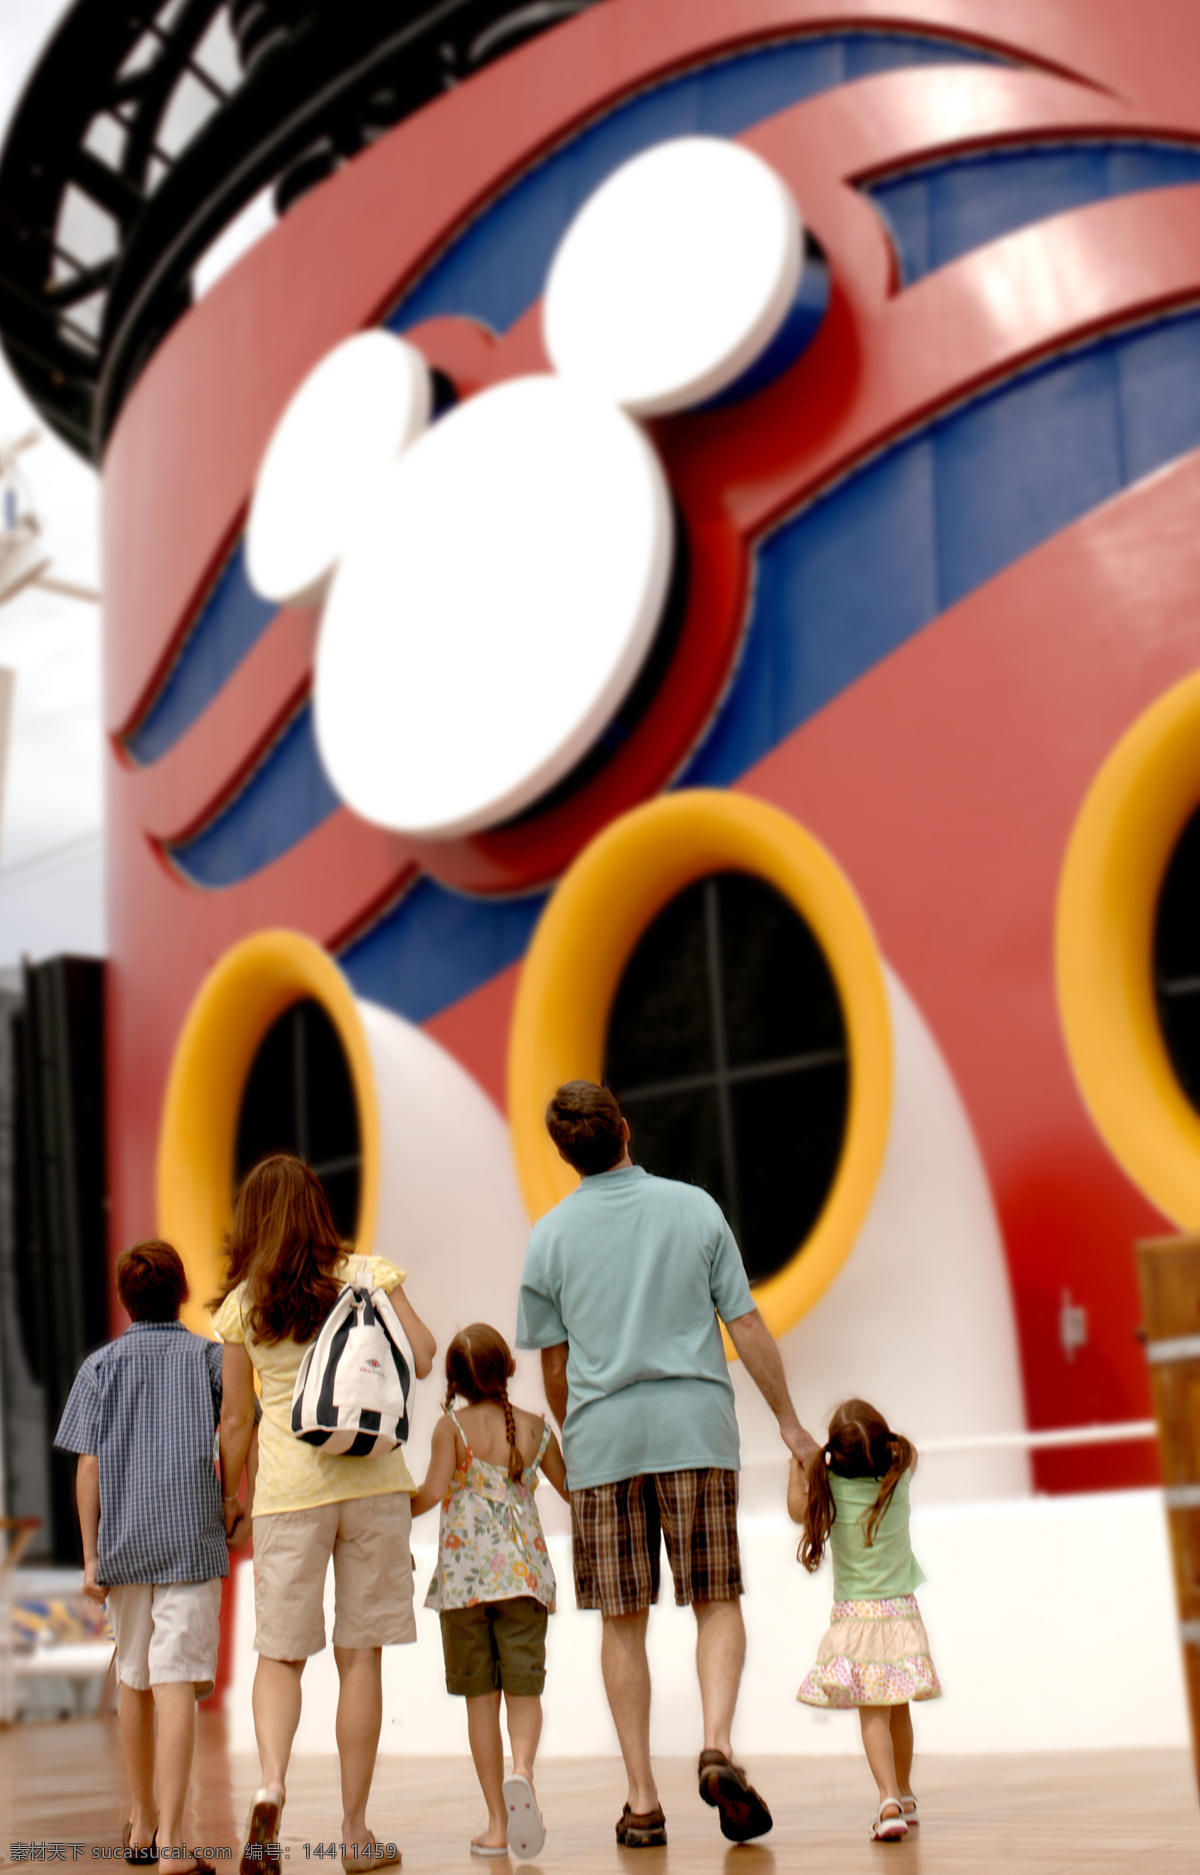 迪士尼 儿童节 父母 孩子 亲子 生活百科 娱乐休闲 一起 去 米奇 乐园 儿童公园 米奇妙妙屋 节日素材 六一儿童节